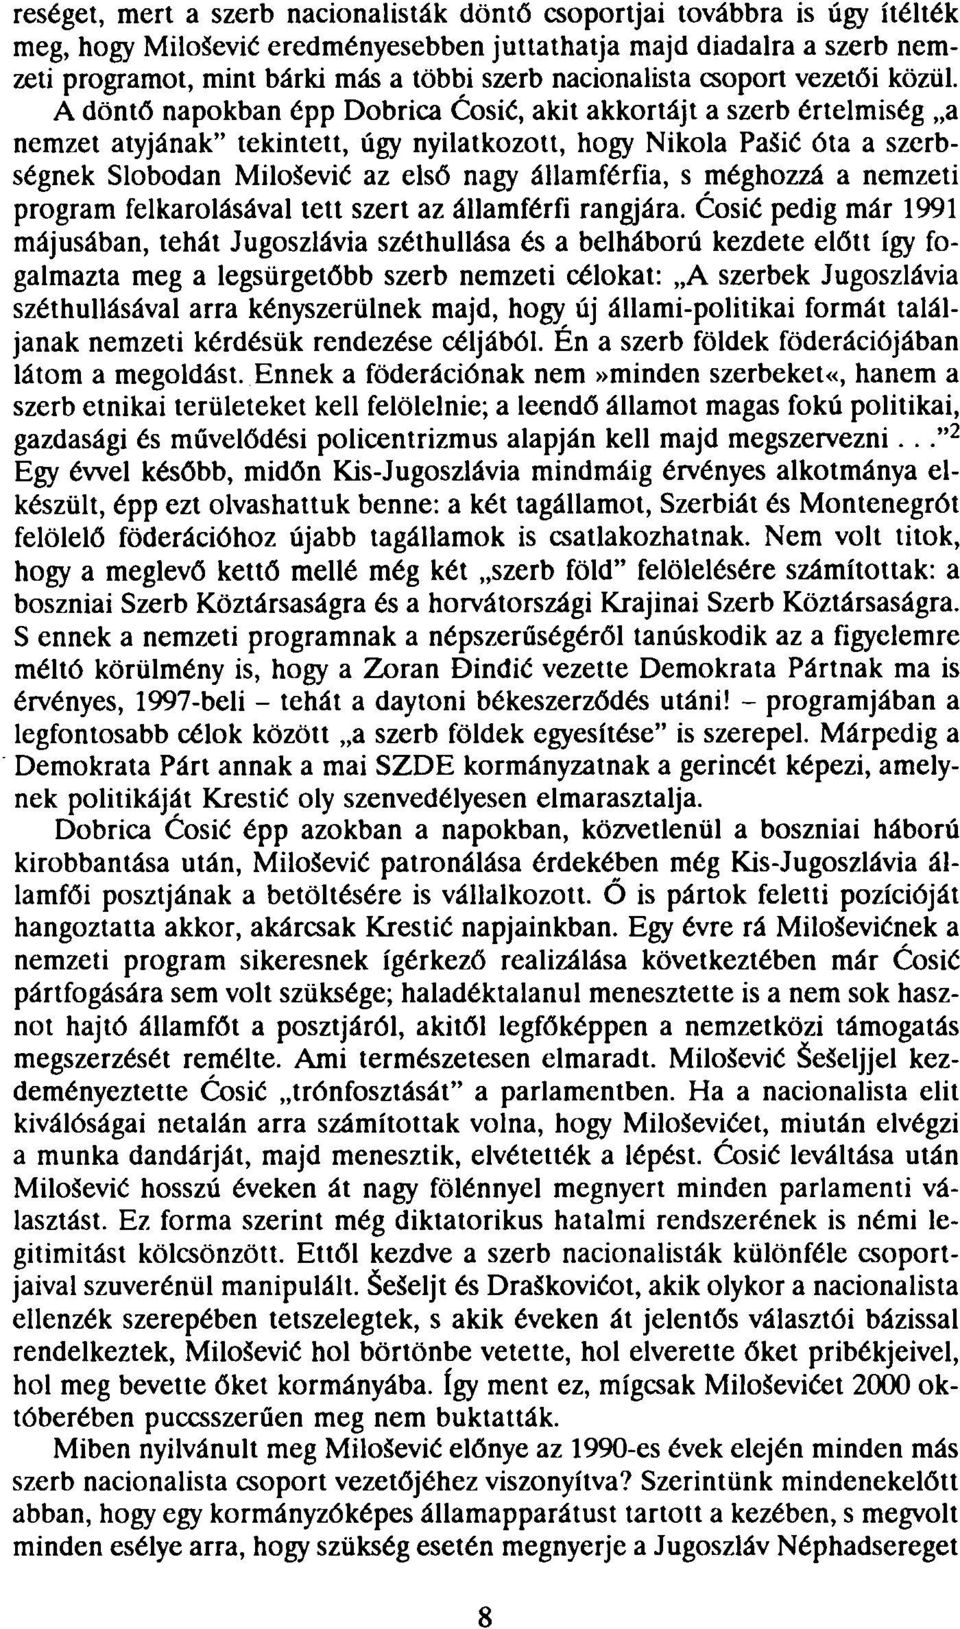 A döntő napokban épp Dobrica Cosié, akit akkortájt a szerb értelmiség a nemzet atyjának" tekintett, úgy nyilatkozott, hogy Niicola PaSié óta a szerbségnek Slobodan MiloSevié az első nagy államférfia,